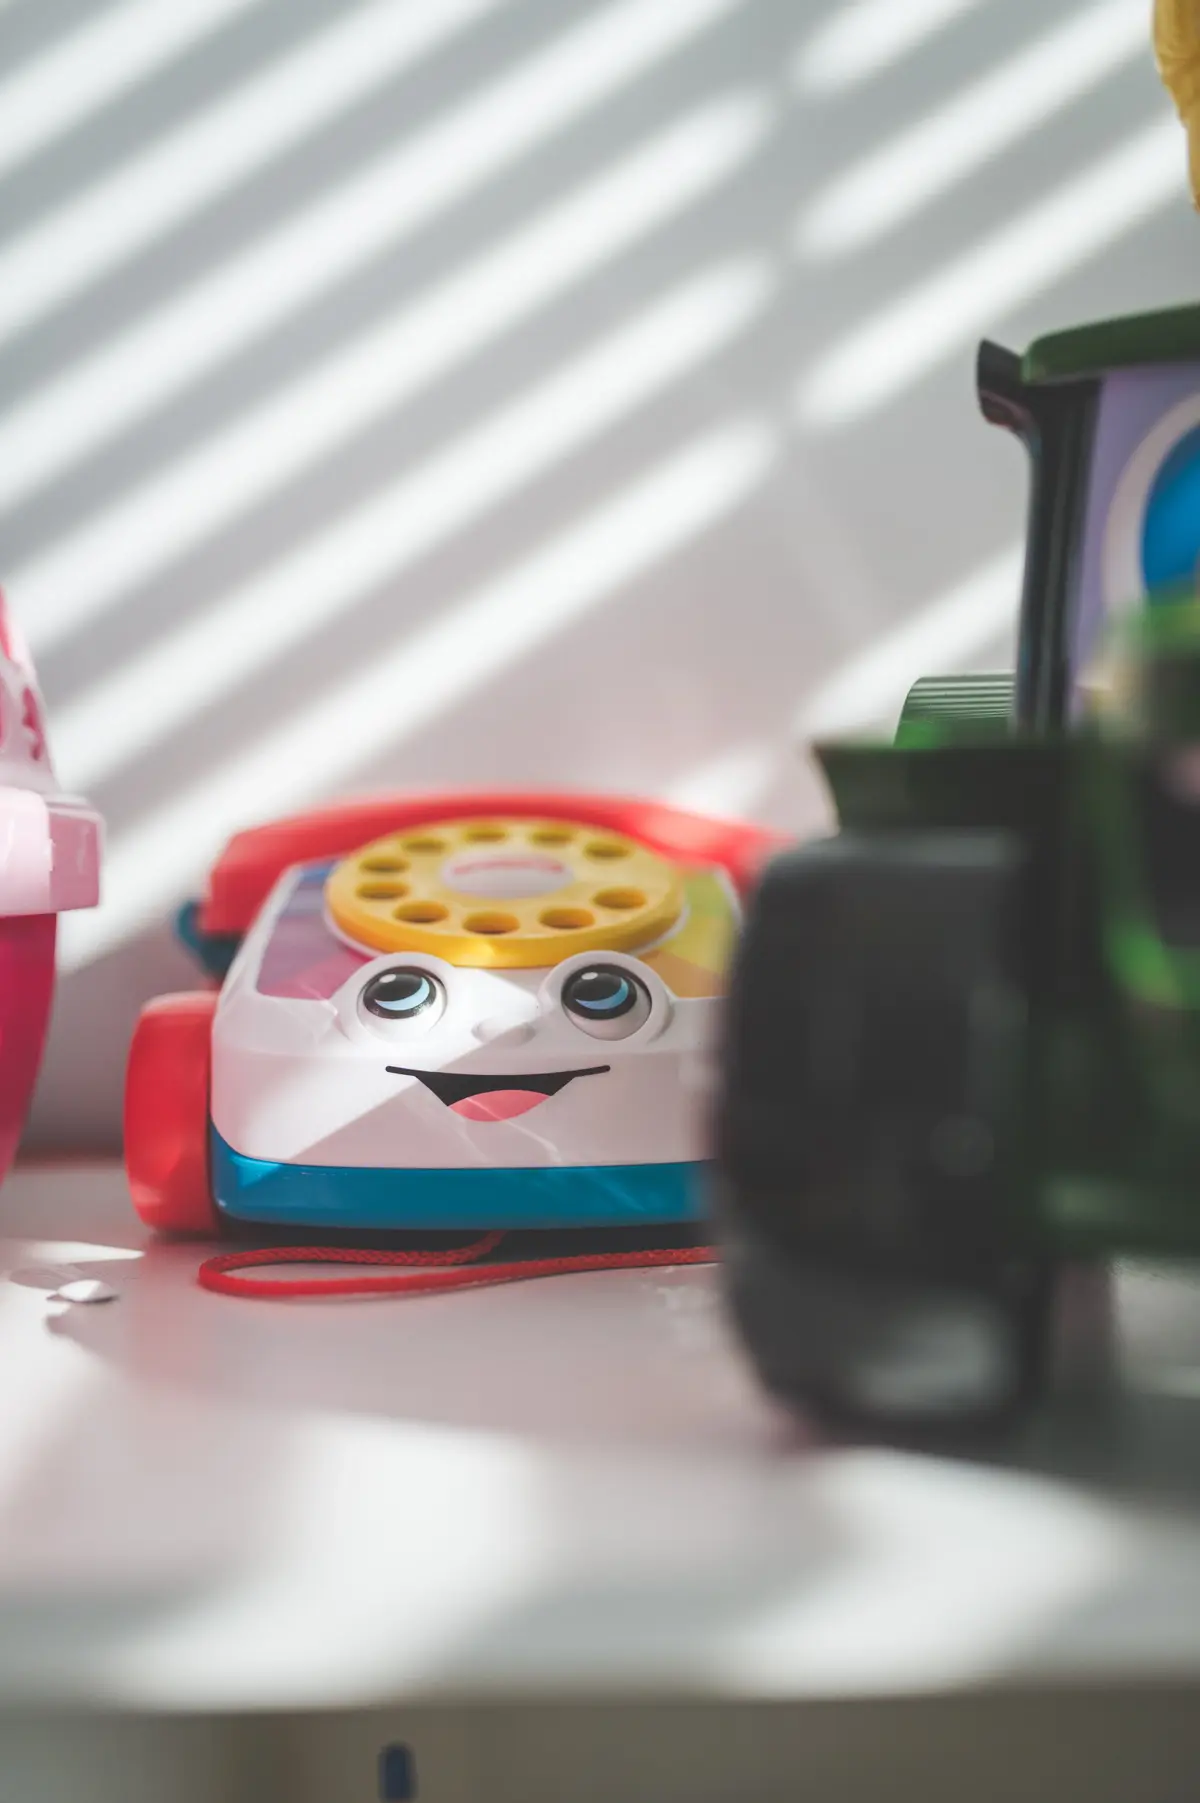 Zabawka kolorowy telefon w pokoju dziecięcym na tle białej ściany